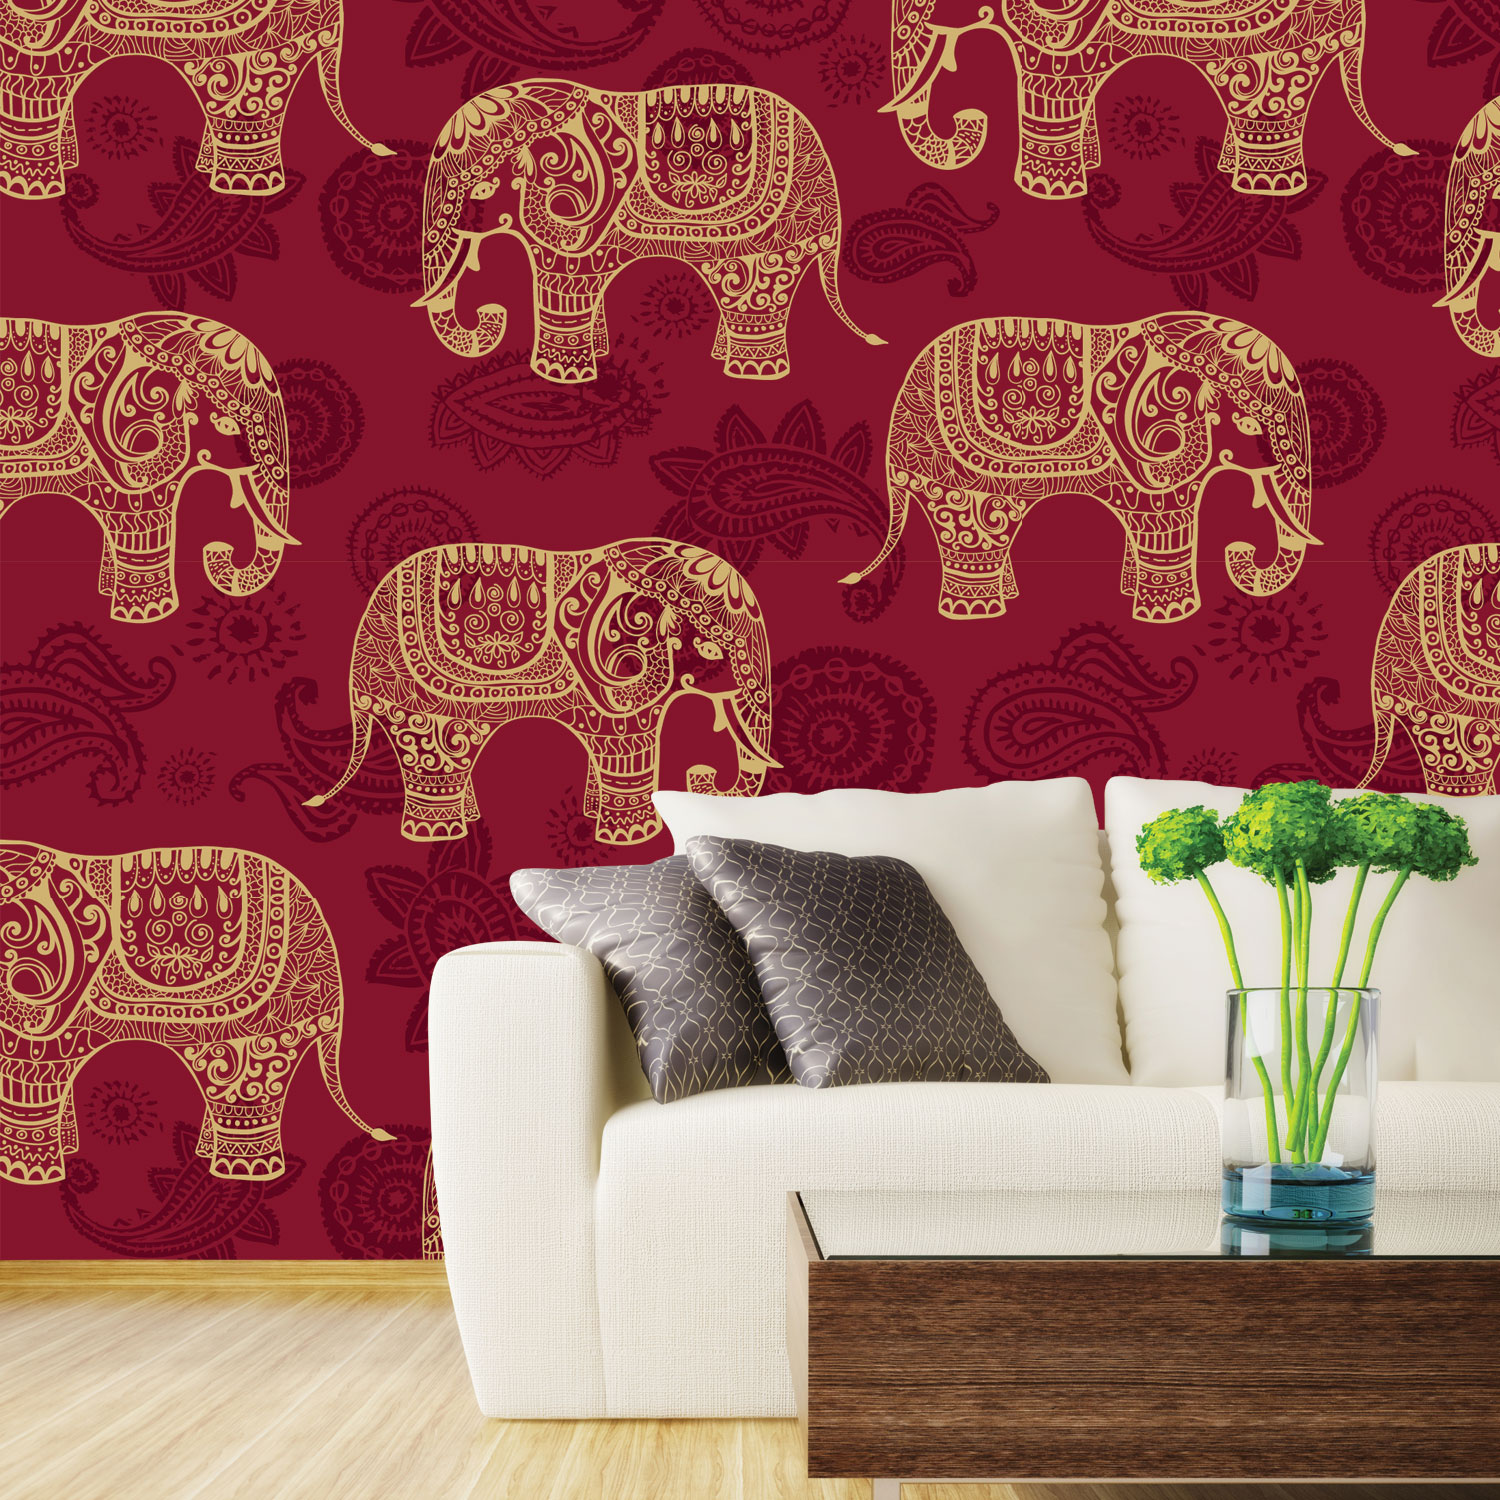 インドの壁の壁紙デザイン,象,インド象,ウォールステッカー,壁紙,象とマンモス